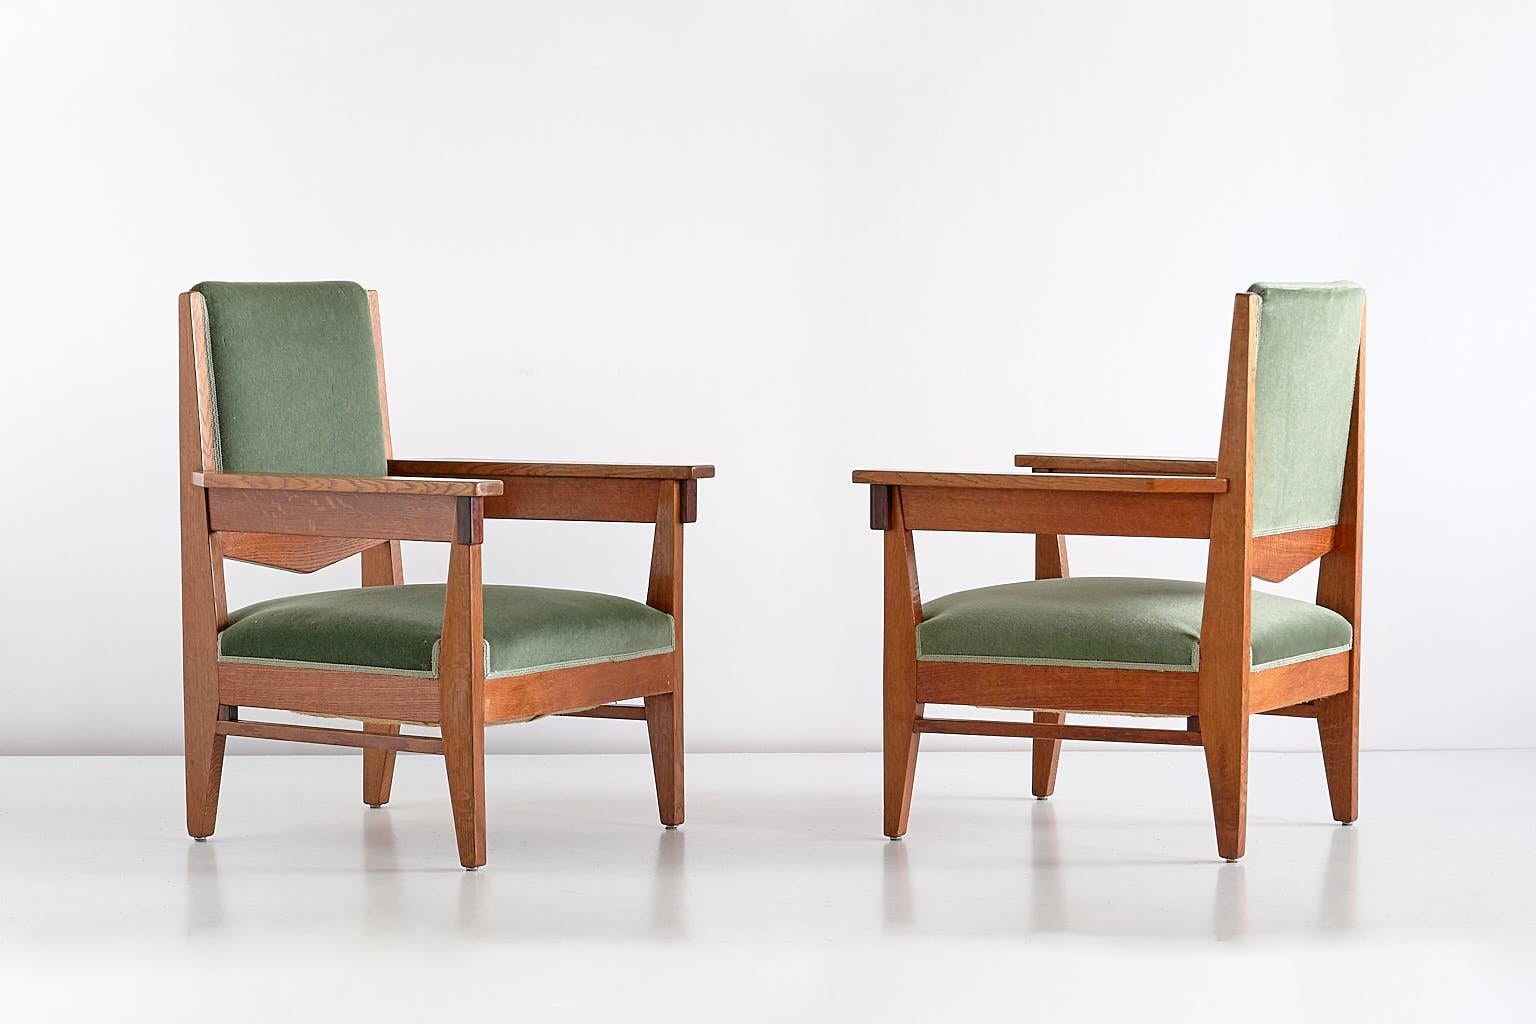 Cette rare paire de fauteuils a été conçue par Anton Lucas et produite à Leyde, aux Pays-Bas, vers 1925. Les cadres sont en bois de chêne massif, avec une façade géométrique en ébène de Macassar. Les chaises ont conservé leur revêtement en velours